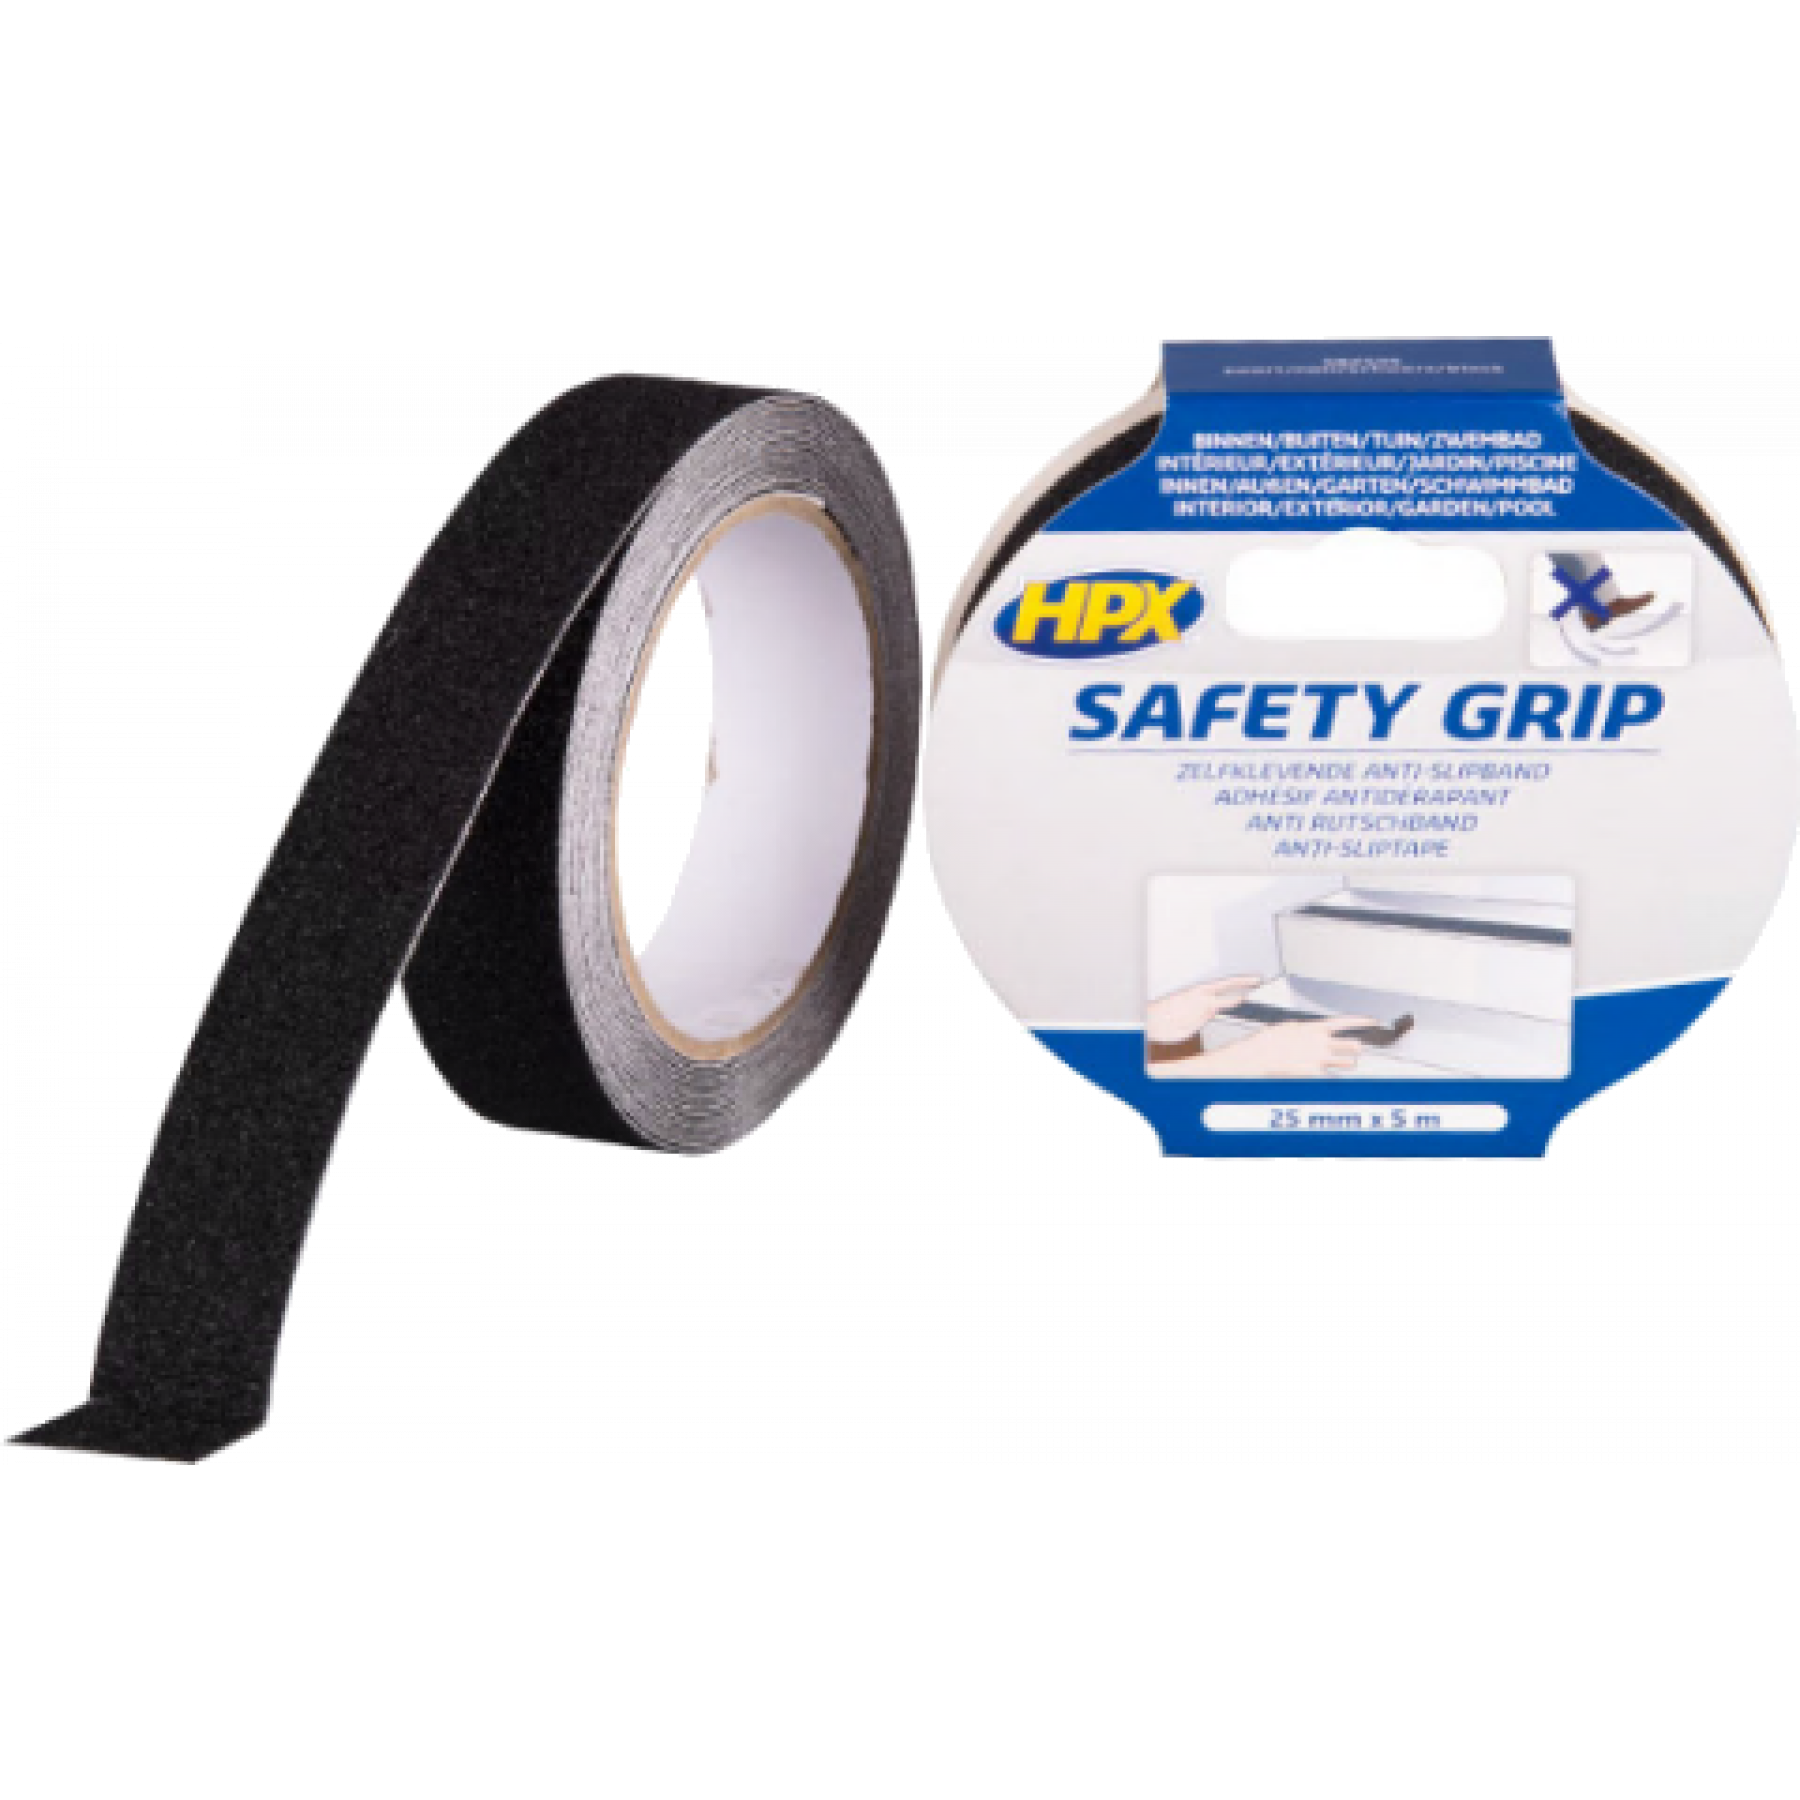 Tape safety grip 25mm 18 mtr zwart